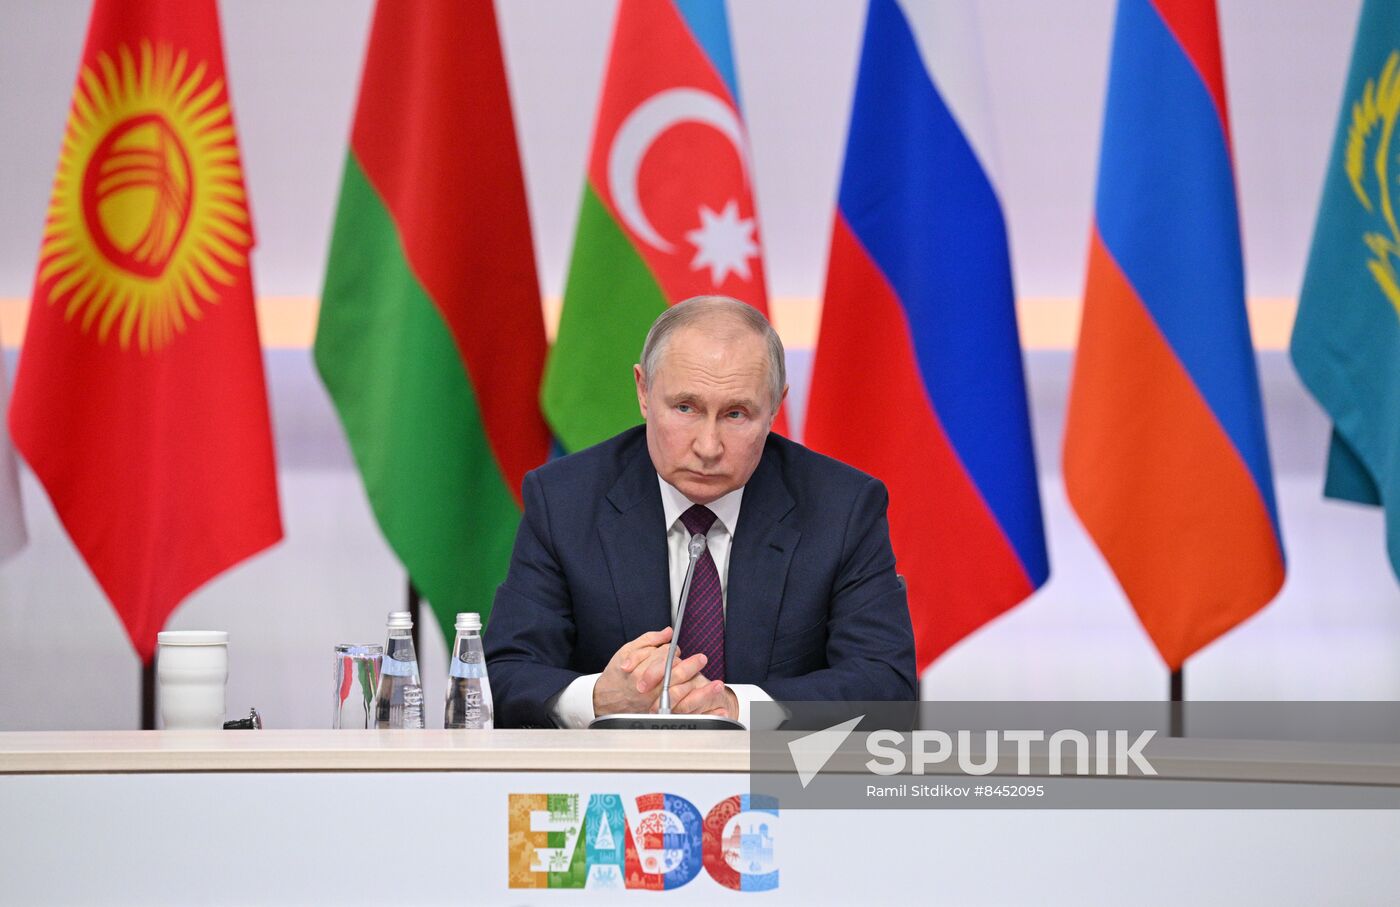 Russia Putin EAEU Summit